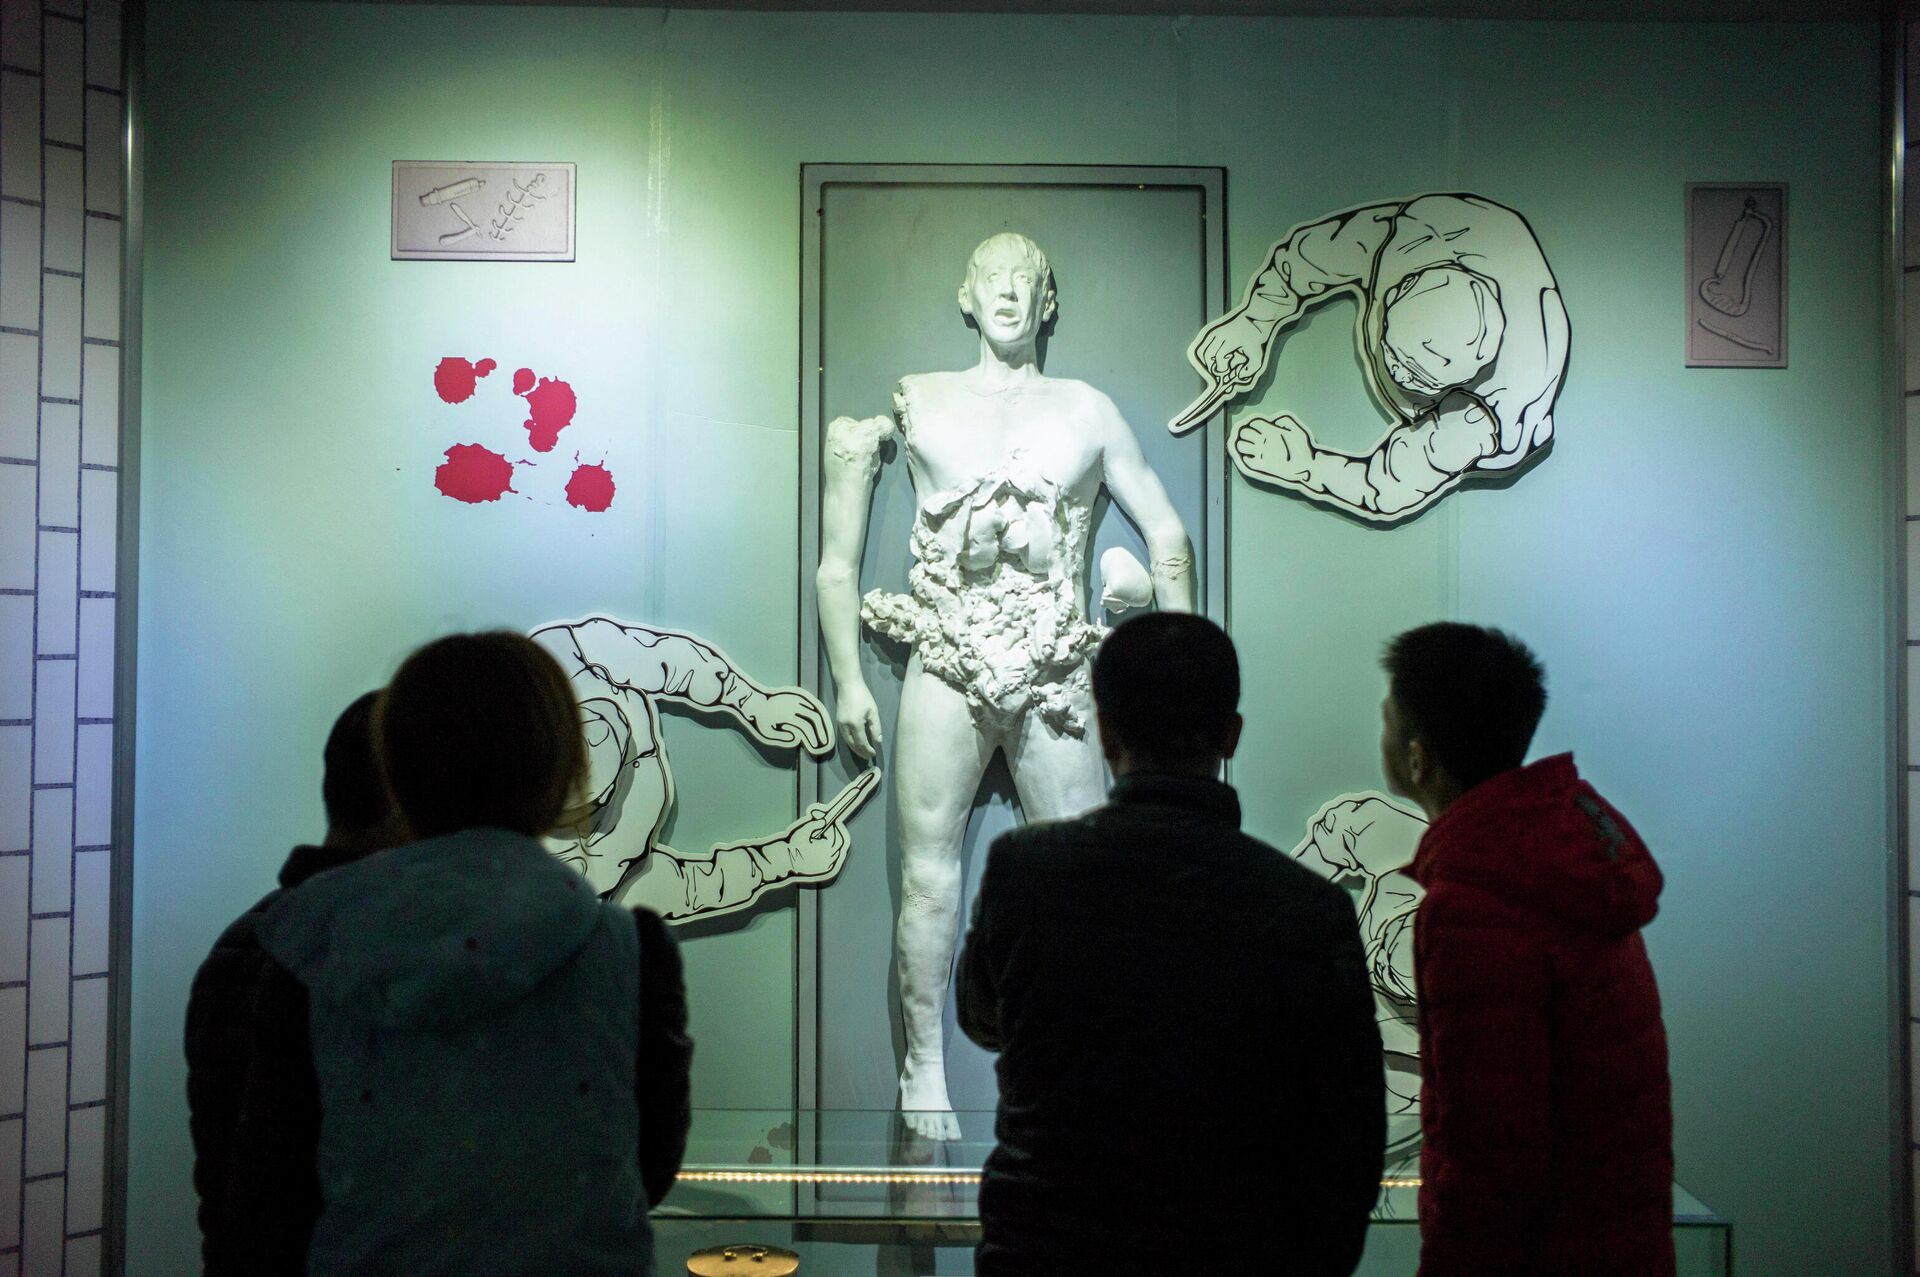 Посетители видят сцену экспериментов над людьми в музее Отряд 731, Харбин, провинция Хэйлунцзян, Китай, 7 января 2015 года - Sputnik Latvija, 1920, 07.09.2021